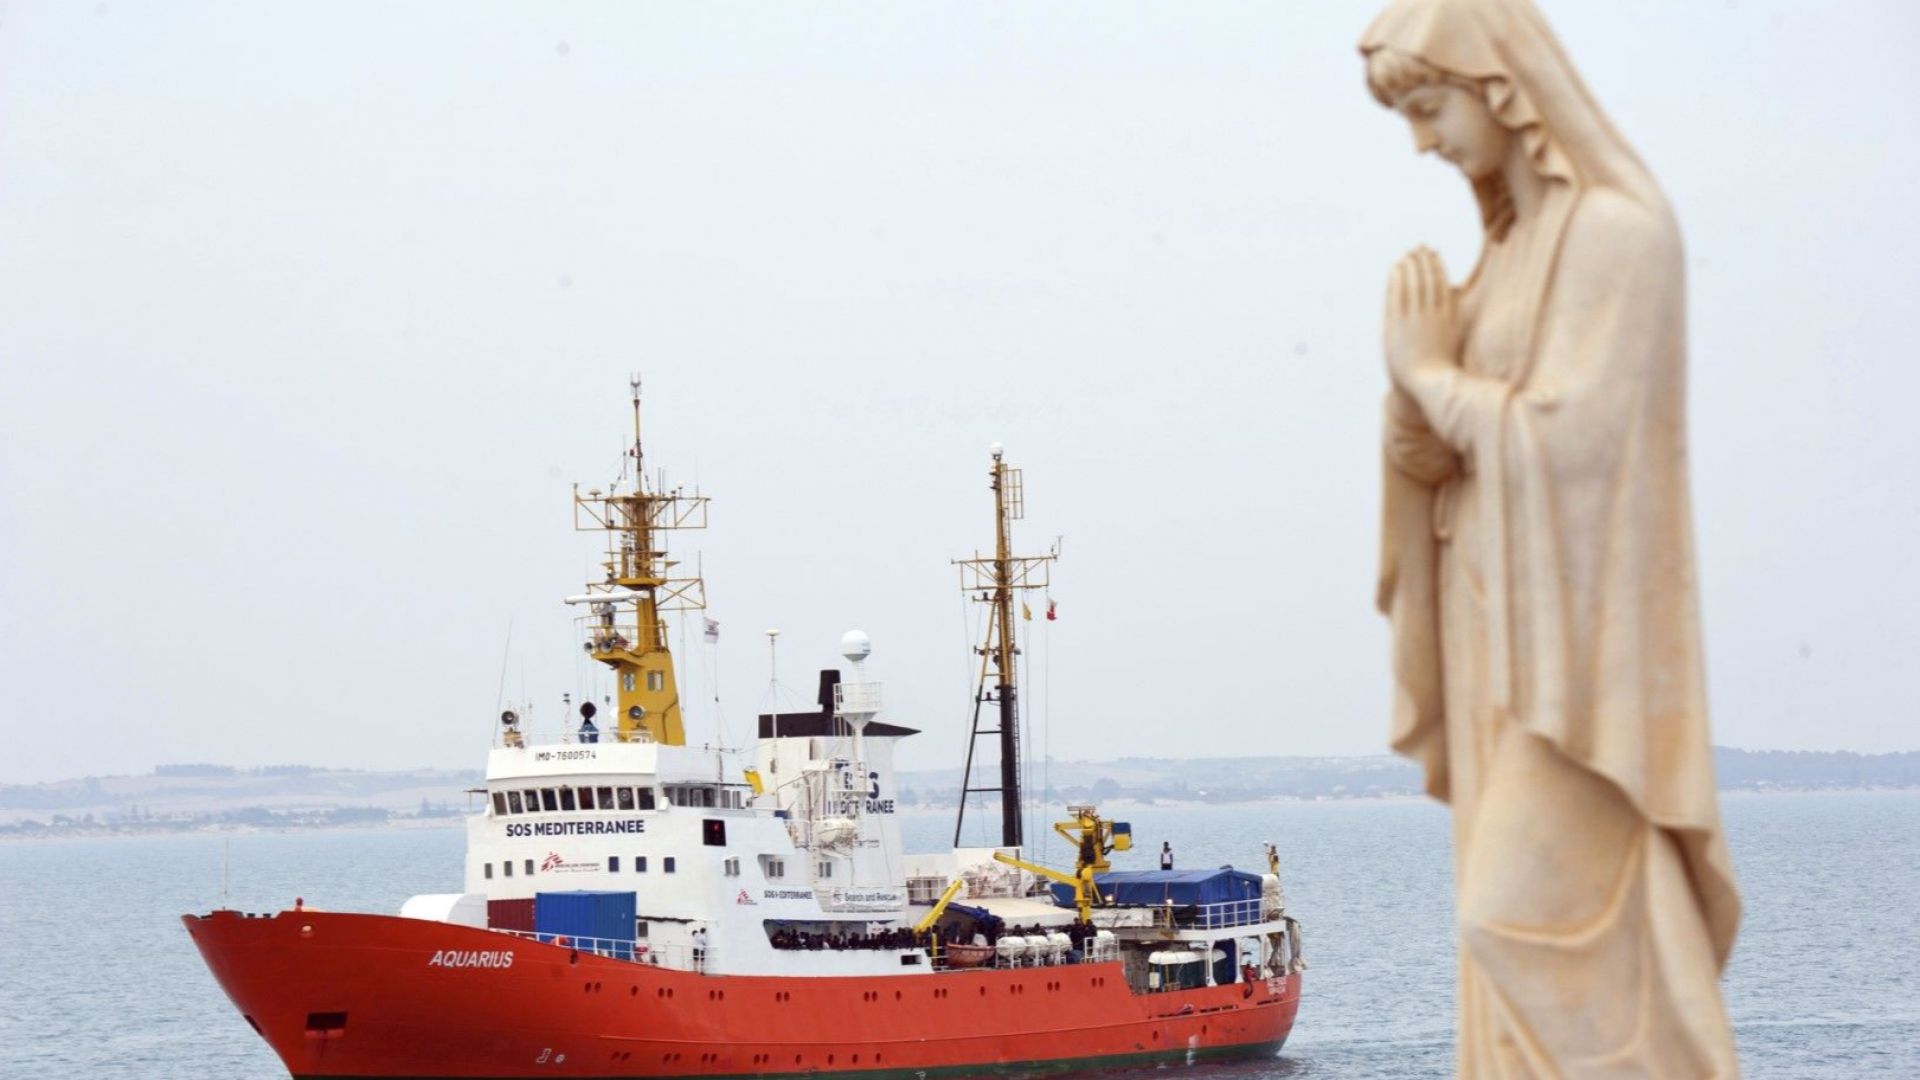 Мигрантите от кораба "Акуариус" поемат към Испания 